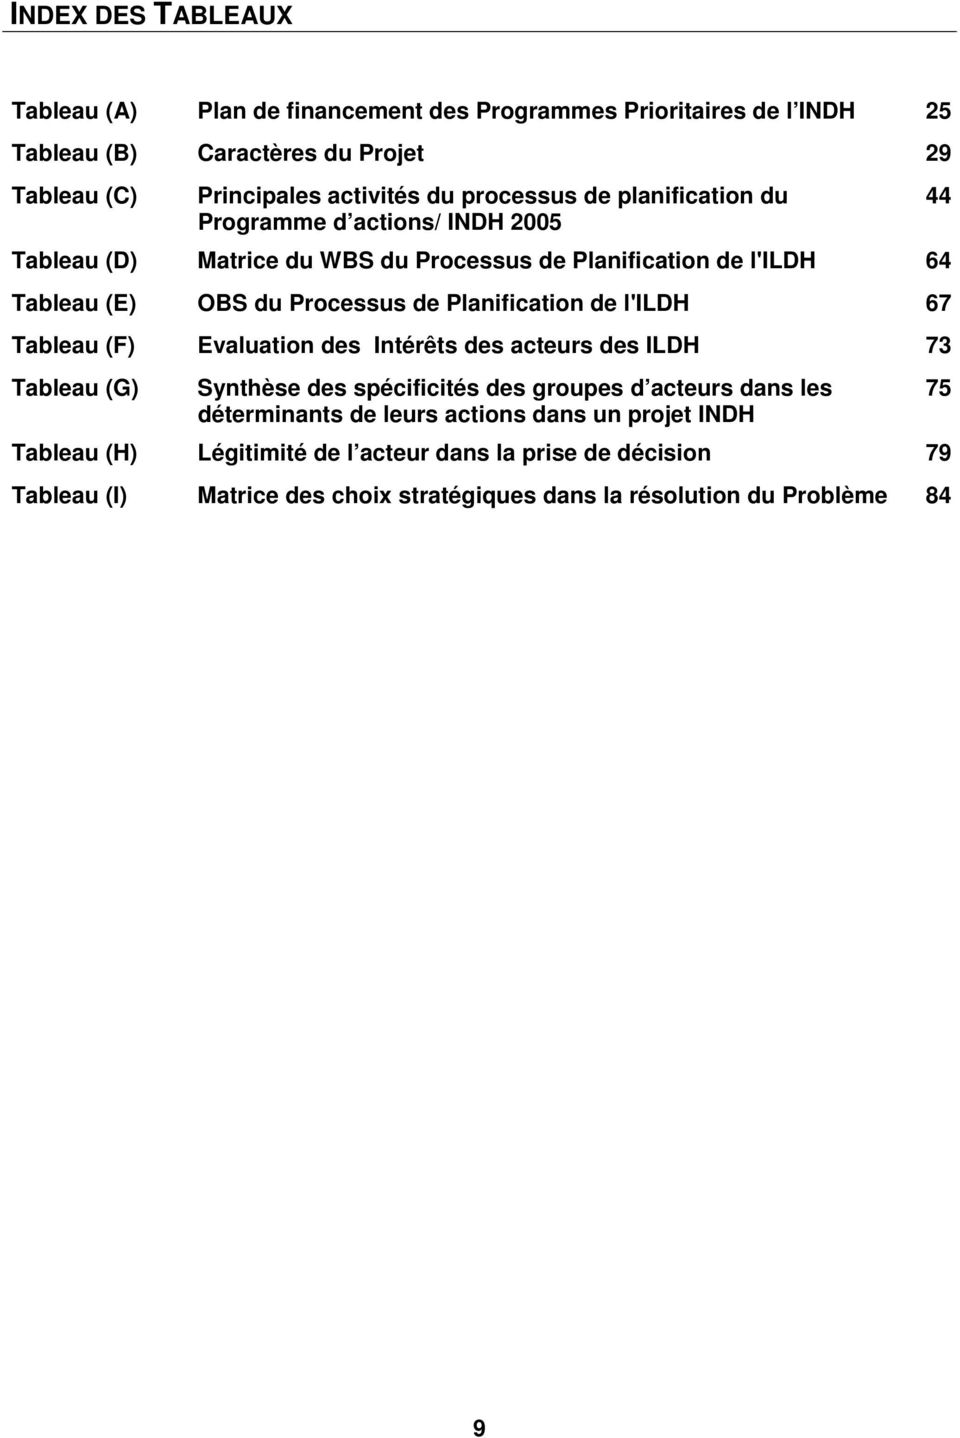 Planification de l'ildh 67 Tableau (F) Evaluation des Intérêts des acteurs des ILDH 73 Tableau (G) Synthèse des spécificités des groupes d acteurs dans les déterminants